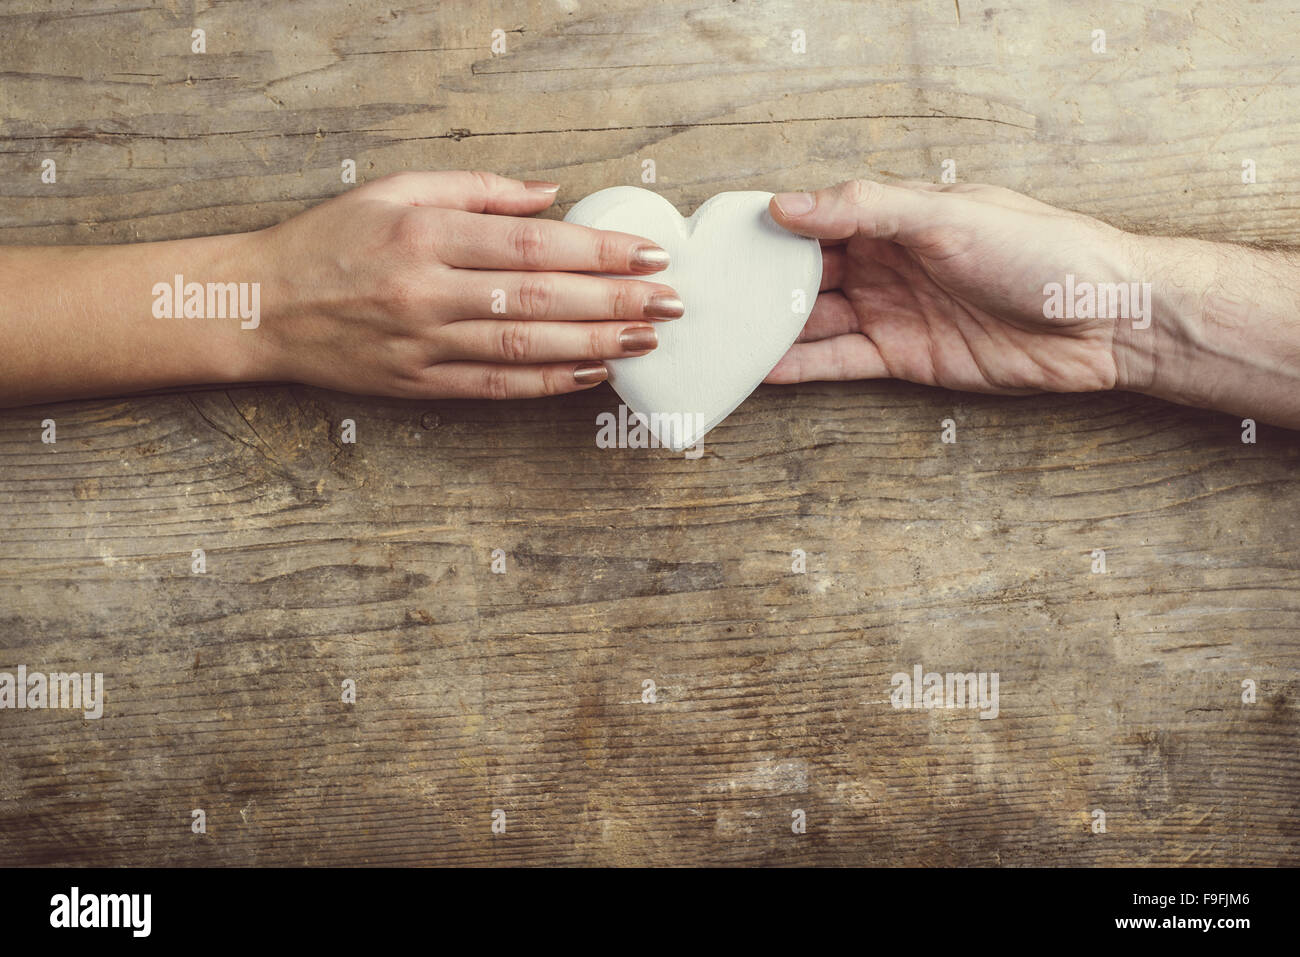 Hände von Mann und Frau durch ein weißes Herz verbunden. Studio auf einem hölzernen Hintergrund erschossen, Ansicht von oben. Stockfoto